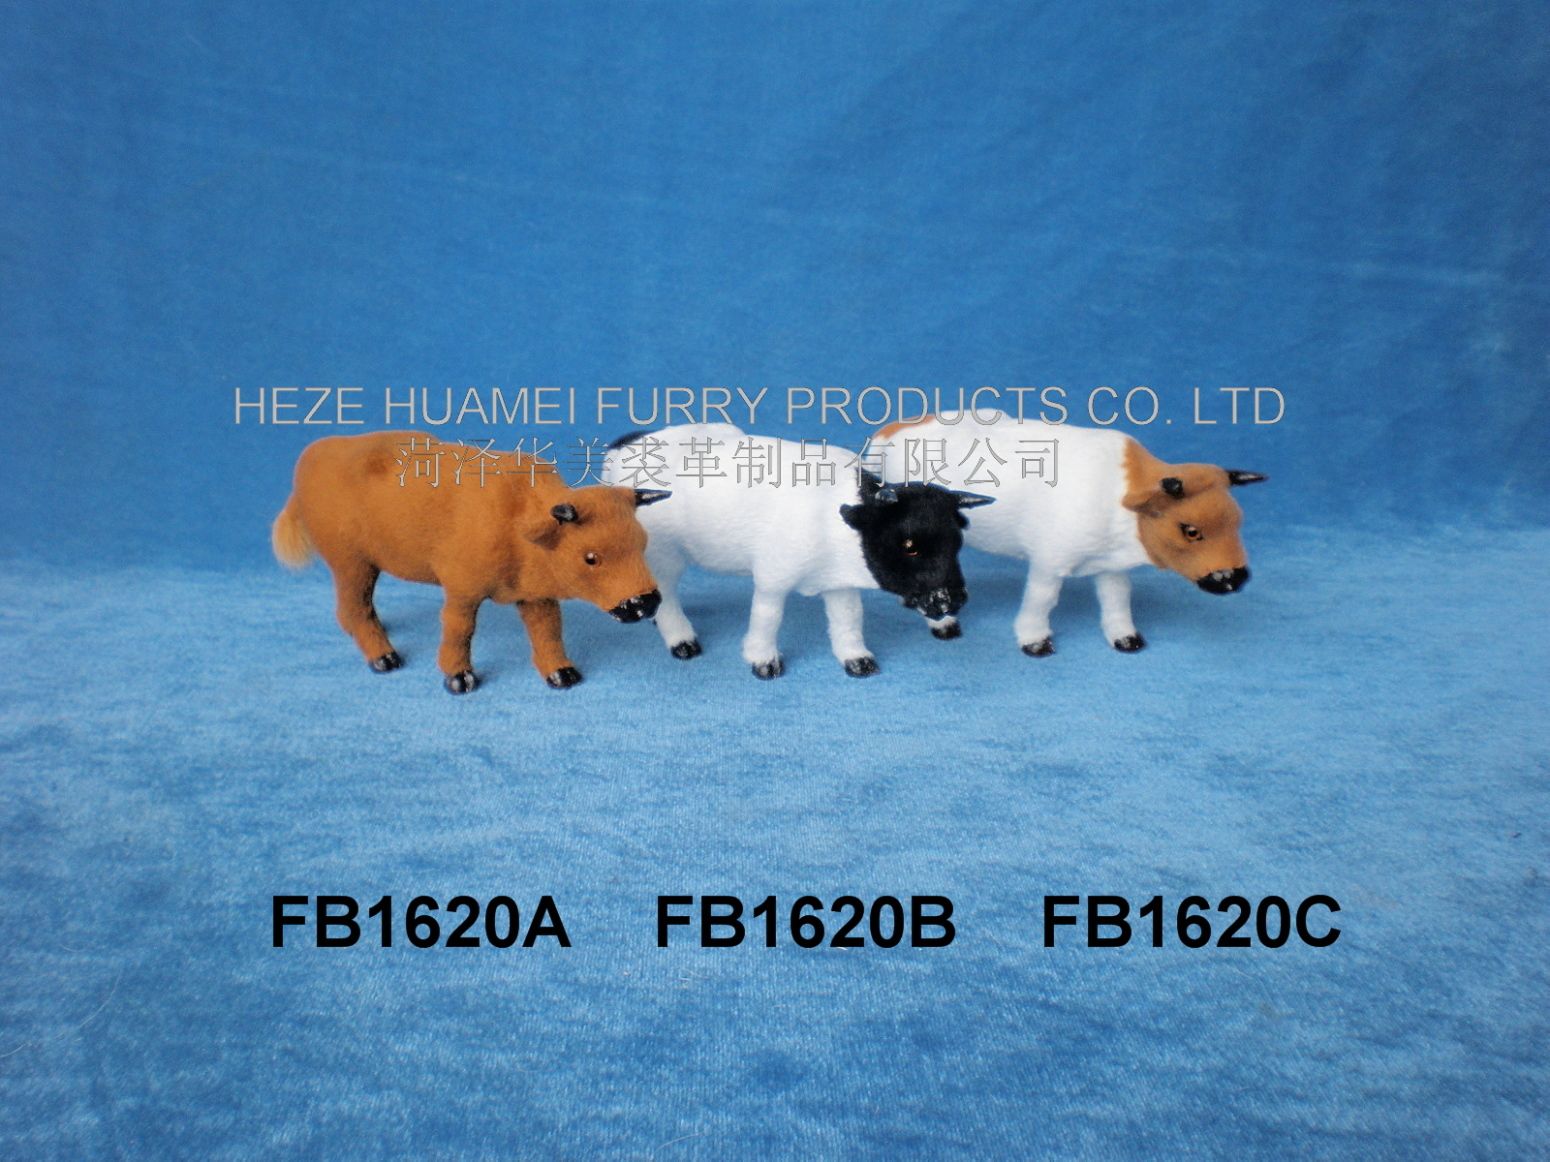 FB1620A    FB1620B     FB1620C,菏泽宇航裘革制品有限公司专业仿真皮毛动物生产厂家